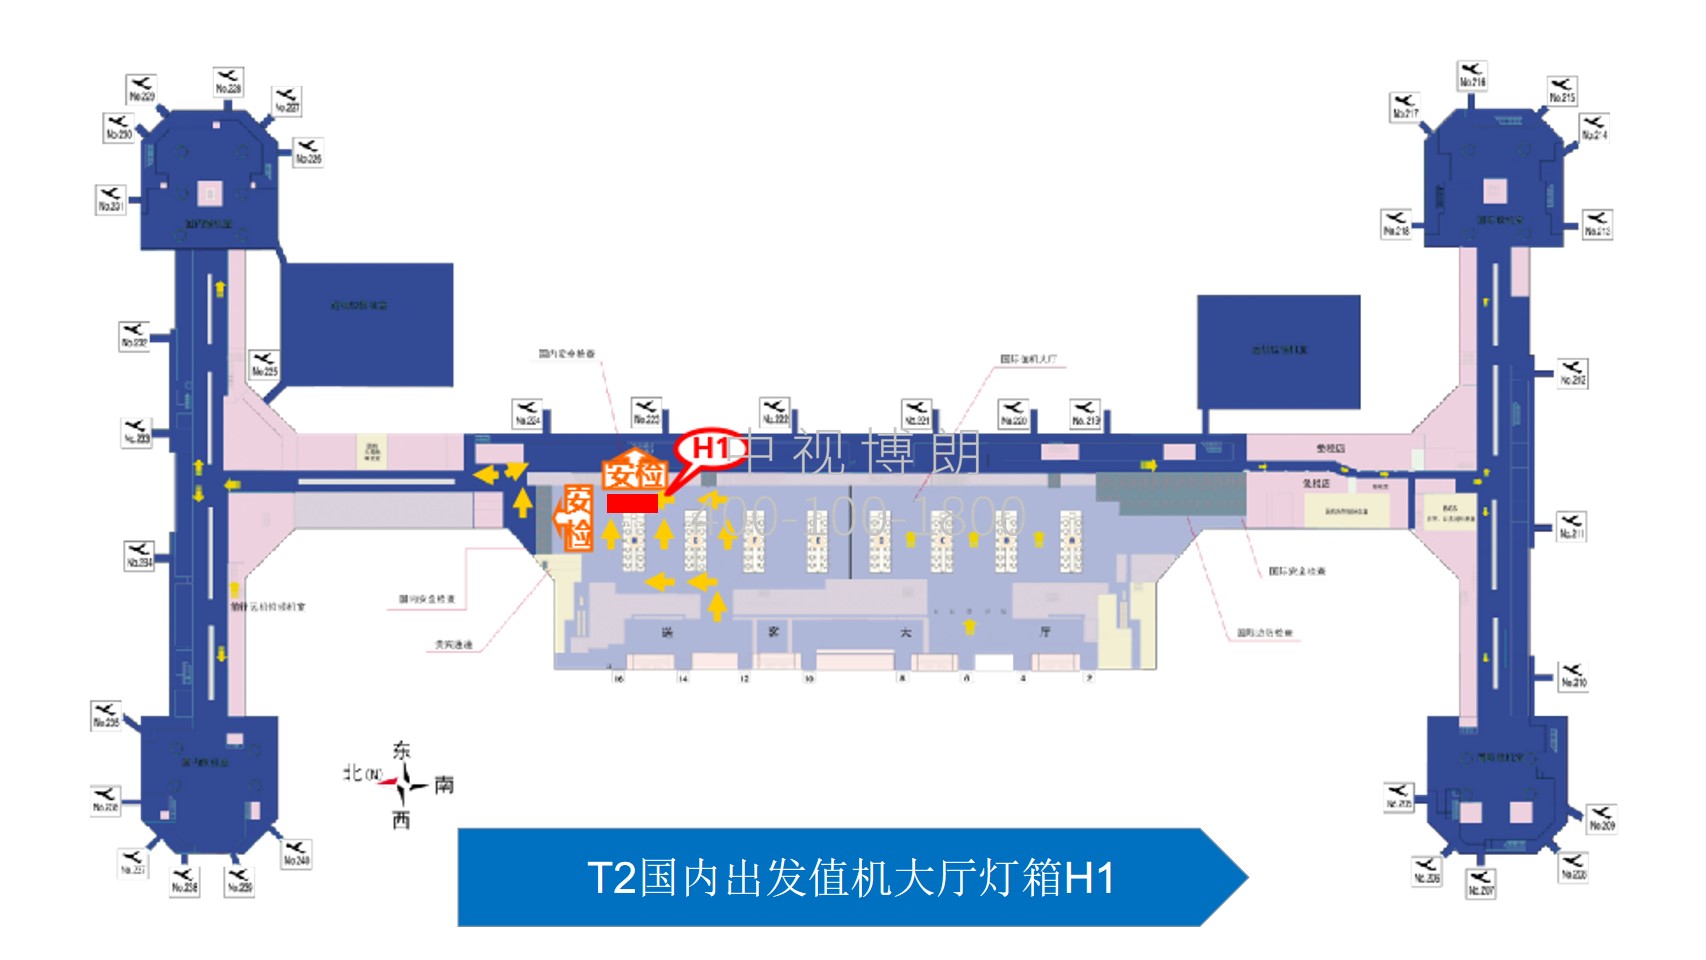 北京首都机场广告-T2 Domestic Departure Check-in Hall Lightbox H1位置图